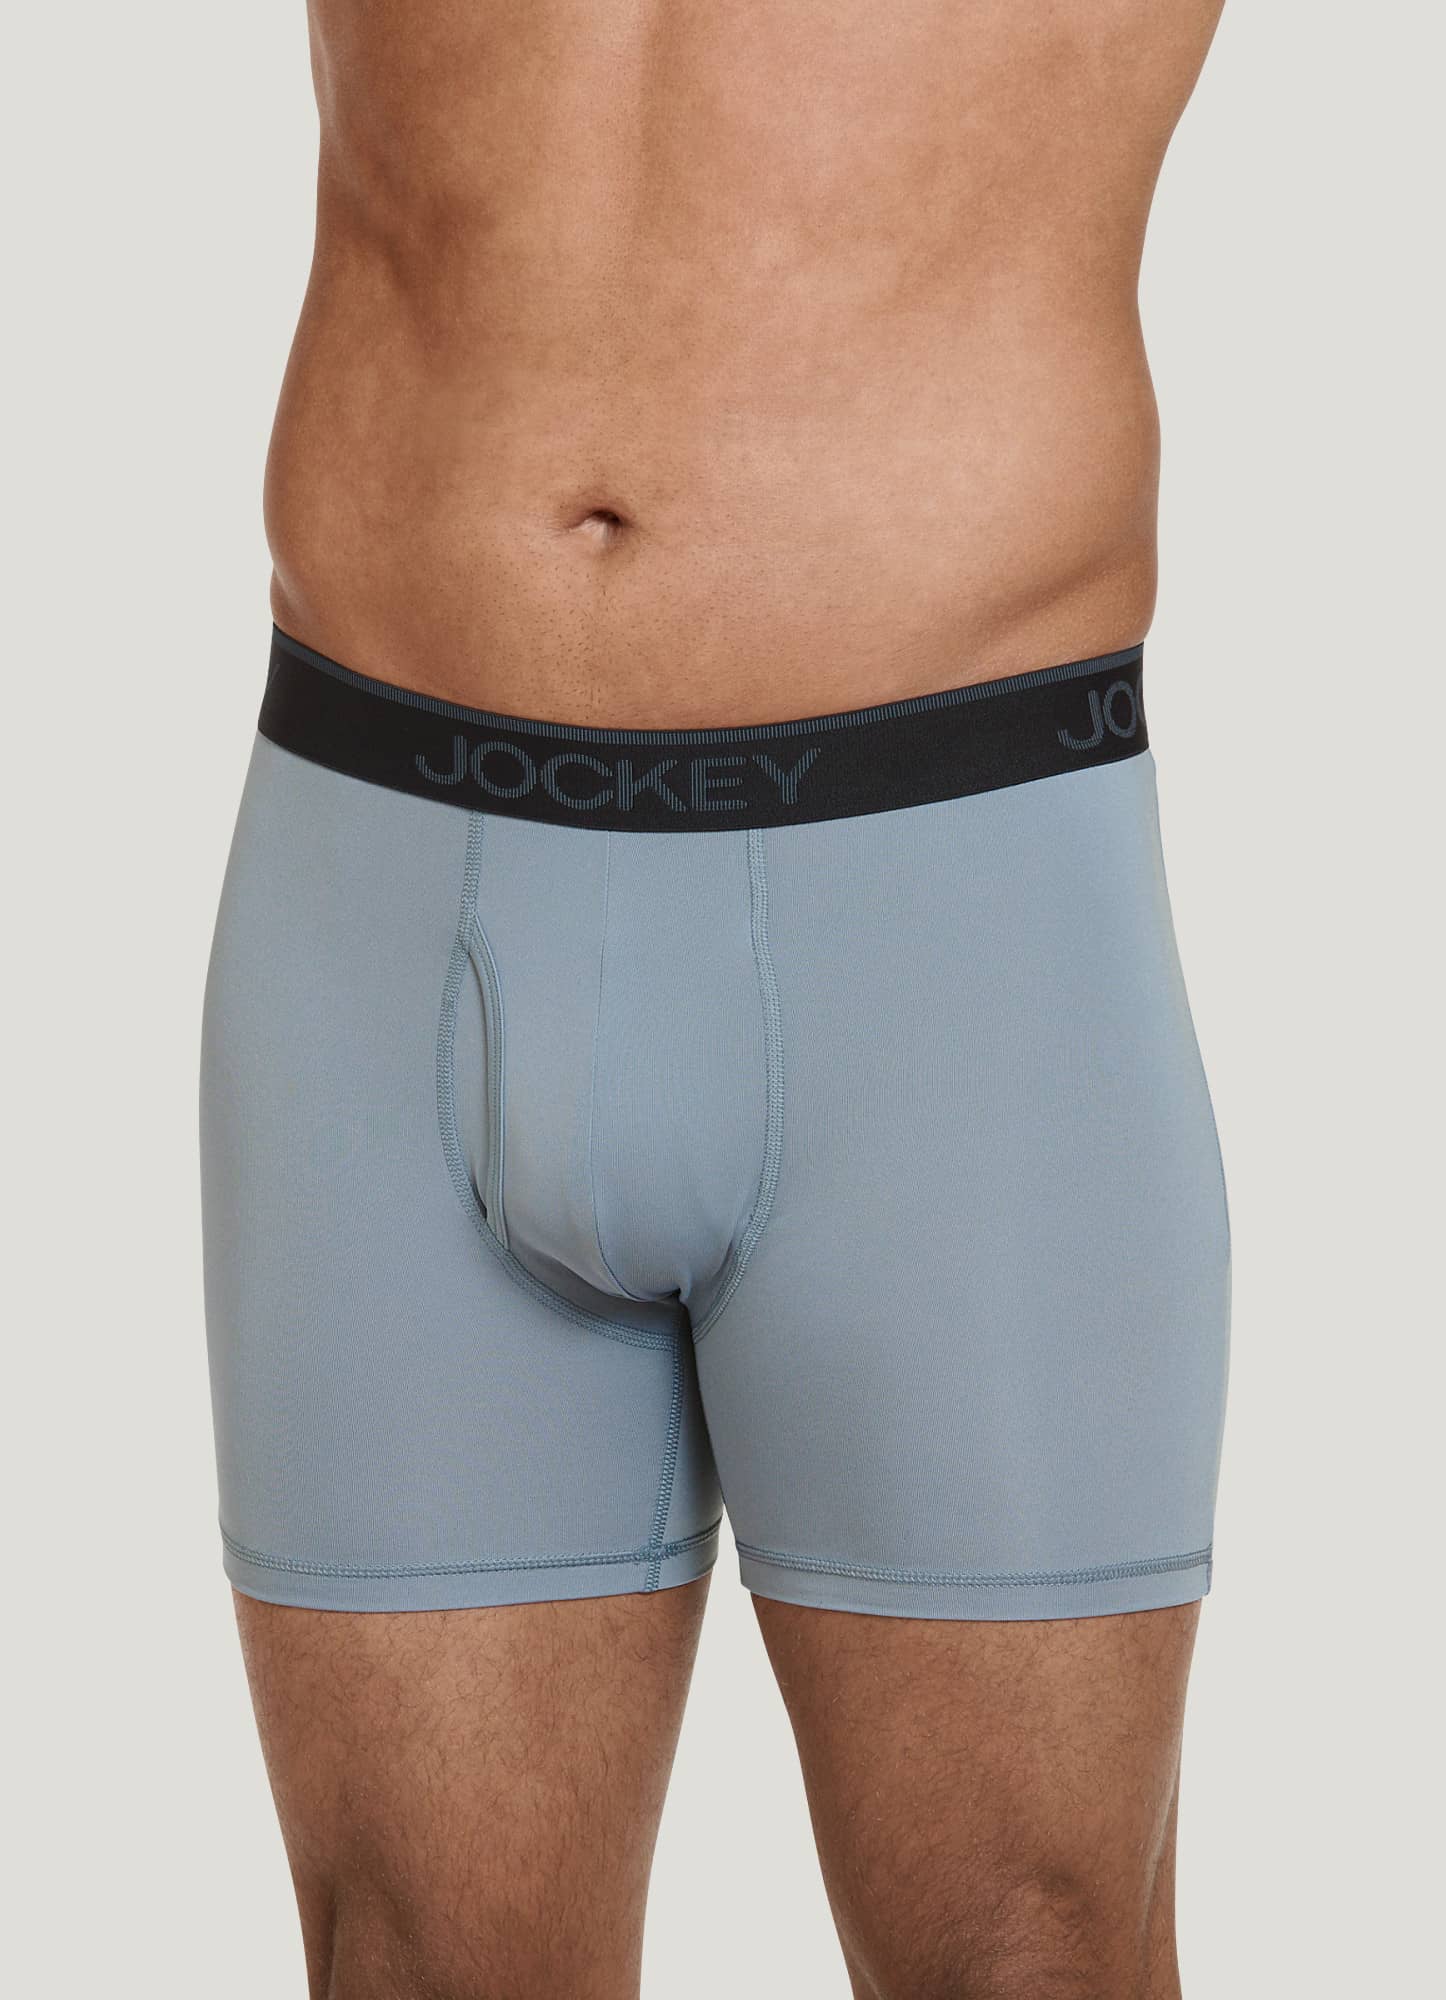 Jockey Essentials Jockey® Essentials Mens Microfiber Boxer Brief Underwear,  Pack of 3, Moisture Wicking Boxer Brief, Workout Underwear, Sizes Small